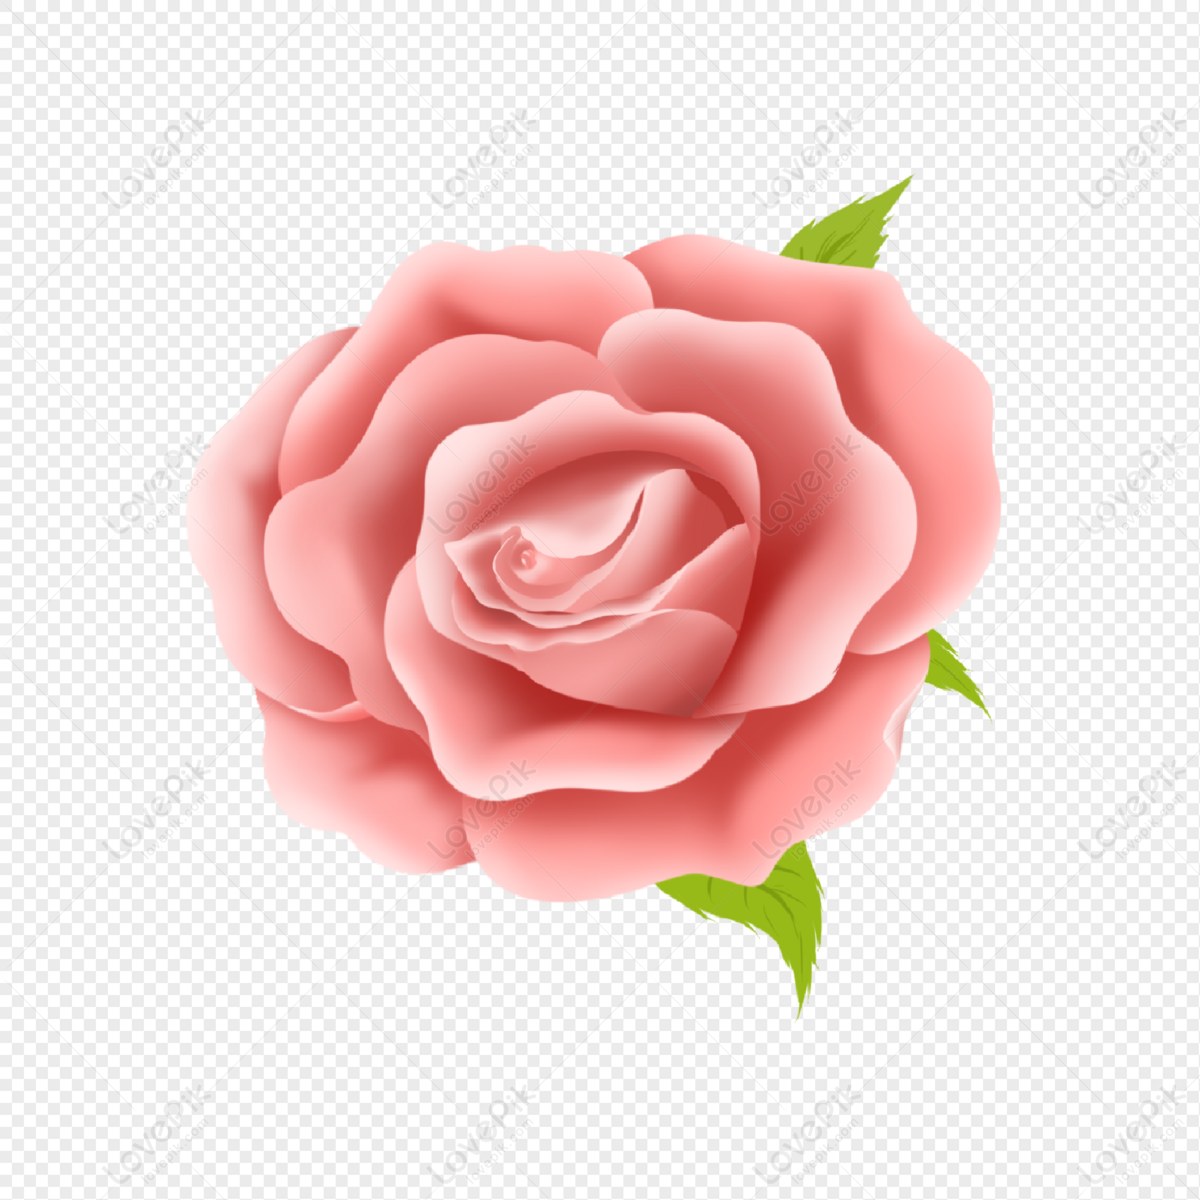 Ảnh miễn phí: Hoa, Hoa hồng, màu da cam, màu hồng, Hoa hồng màu hồng, nở hoa,  Hoa | Hippopx